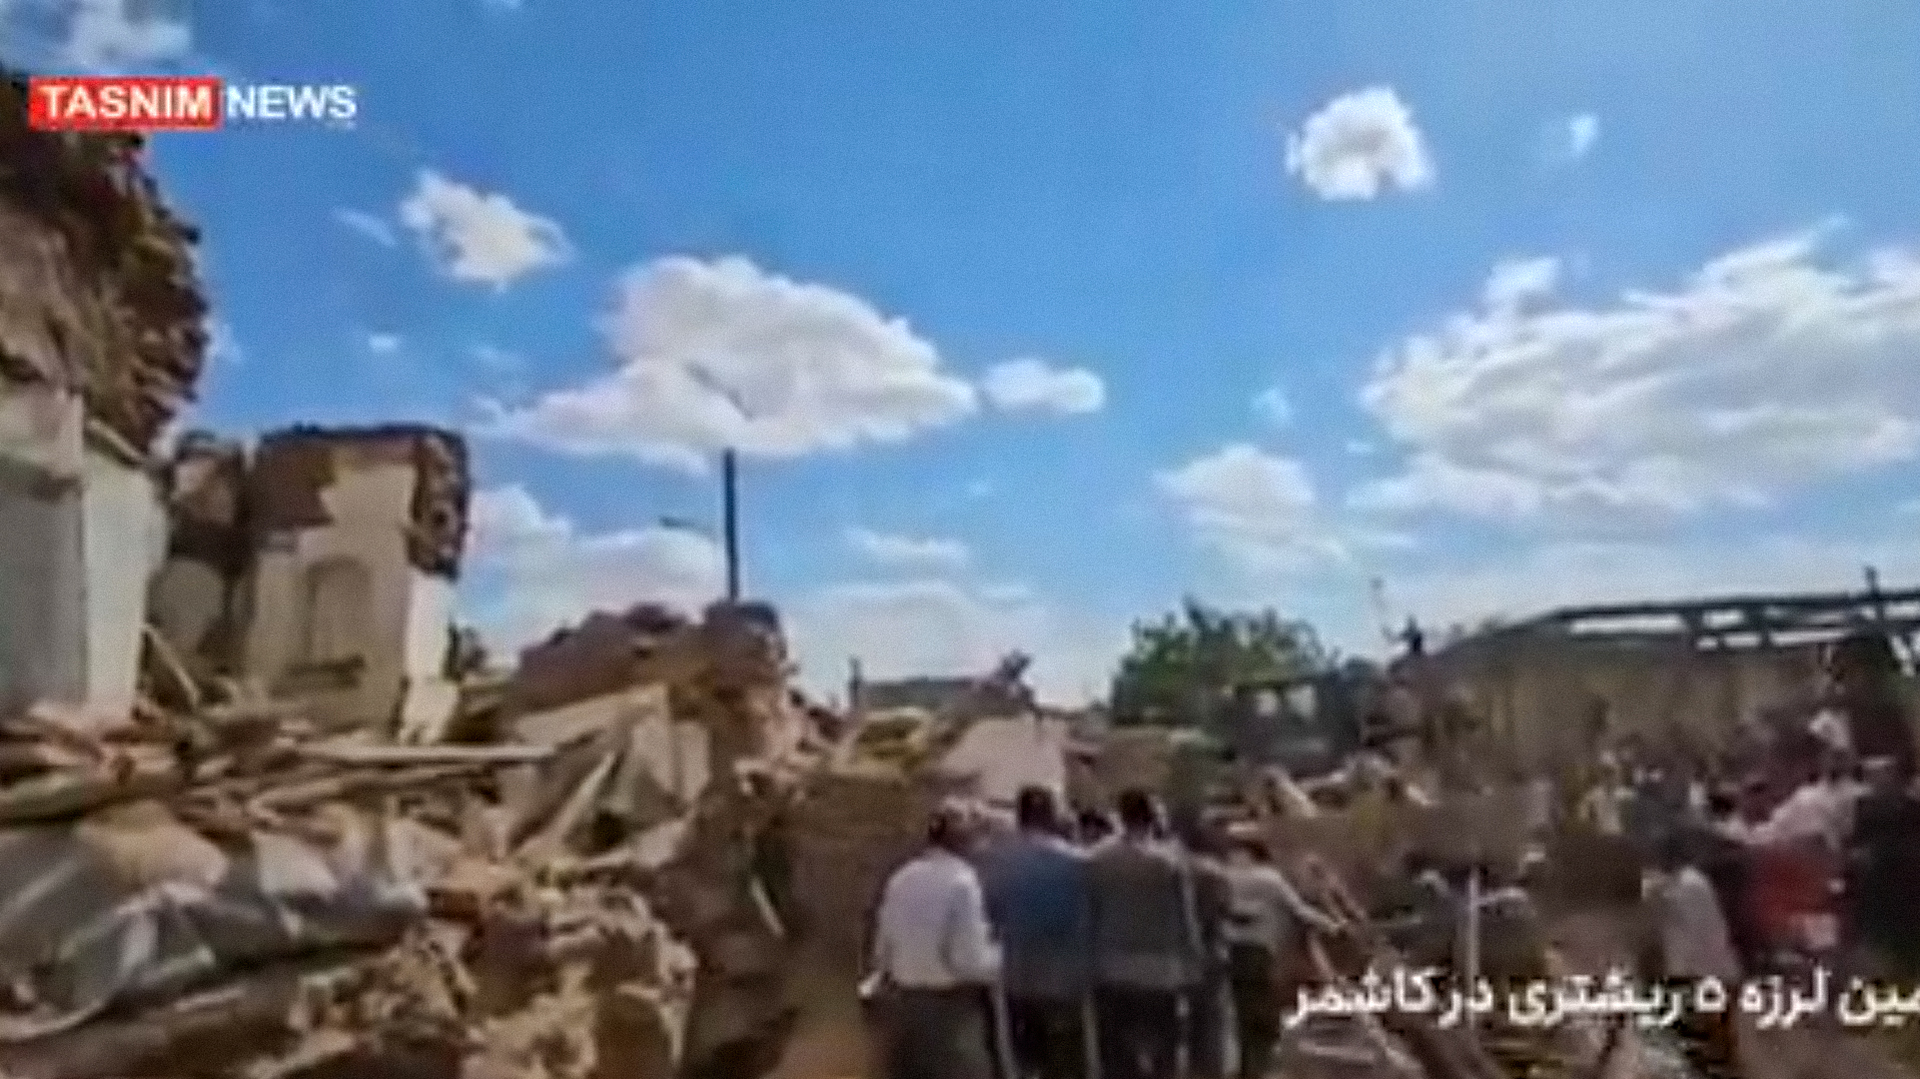 Terremoto de magnitude 4,9 deixa 4 mortos e 120 feridos no Irã